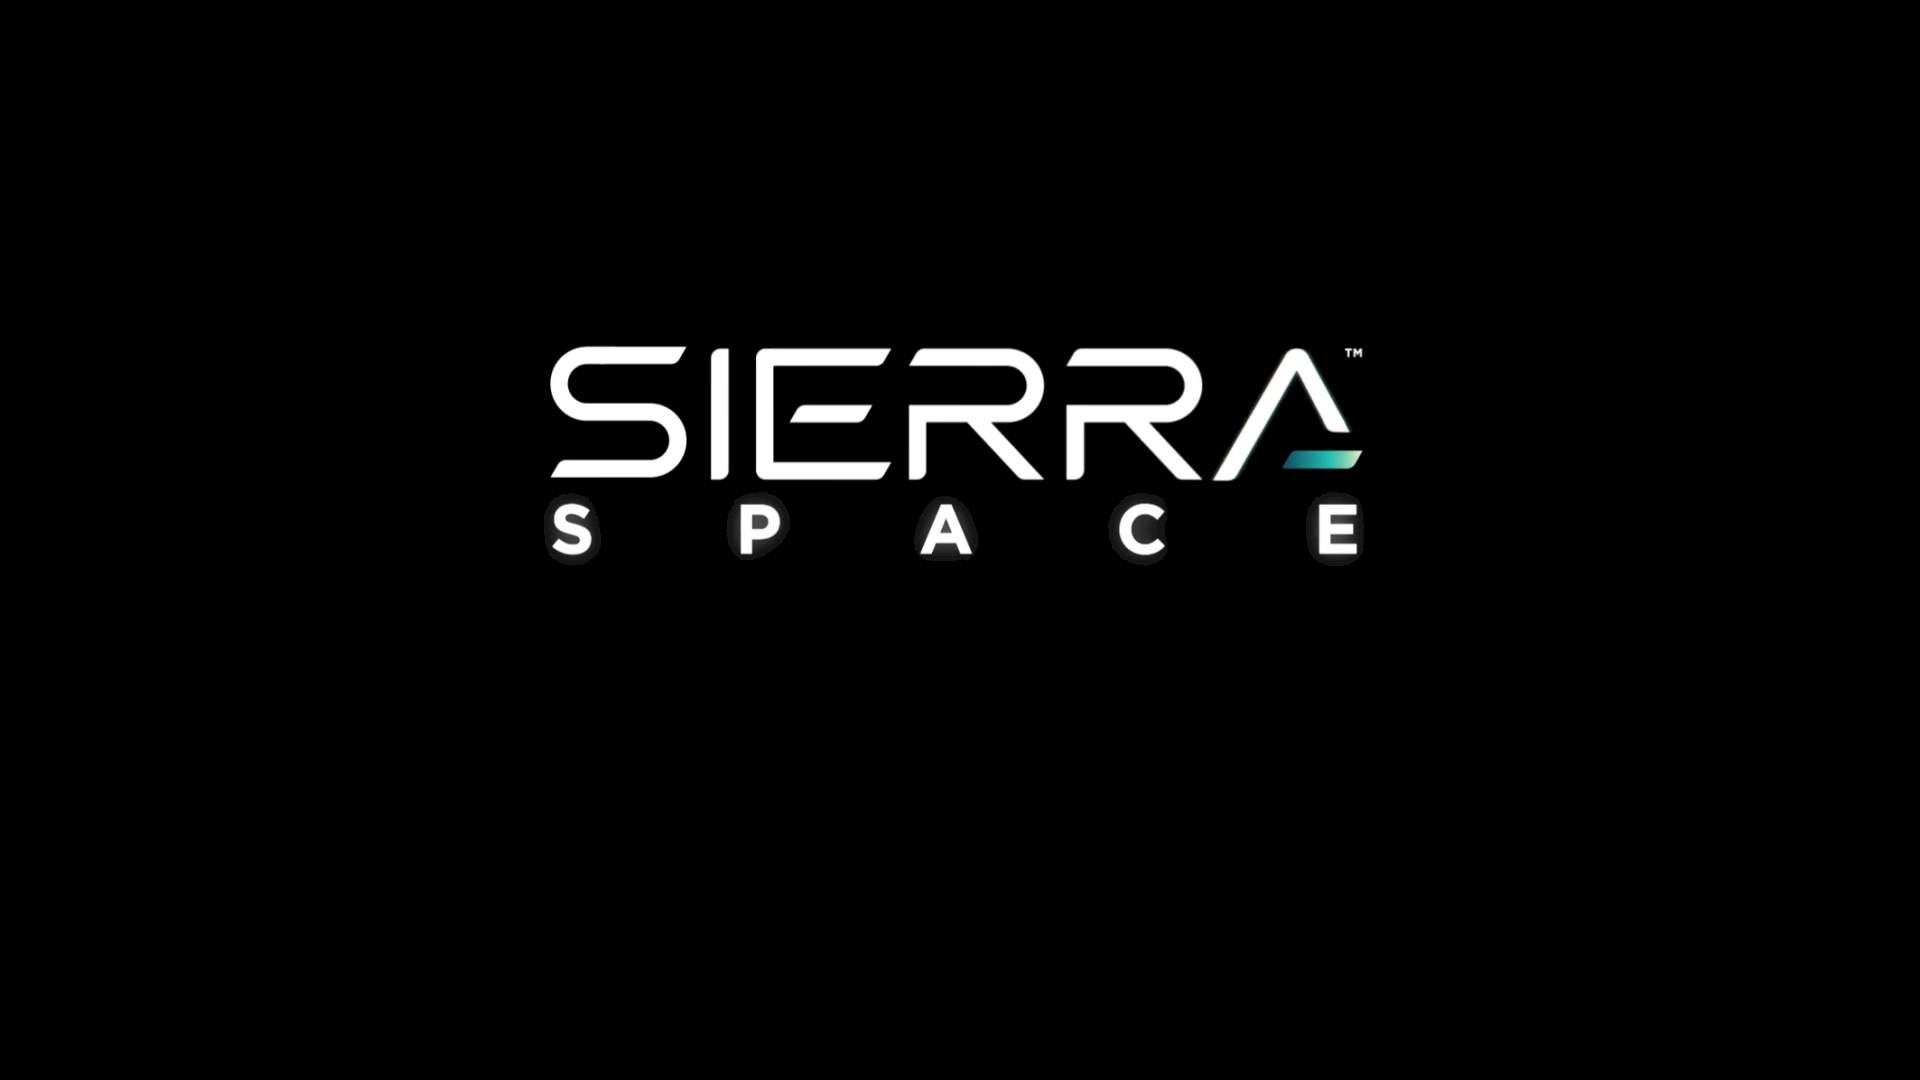 Sierra Space LIFE blow up